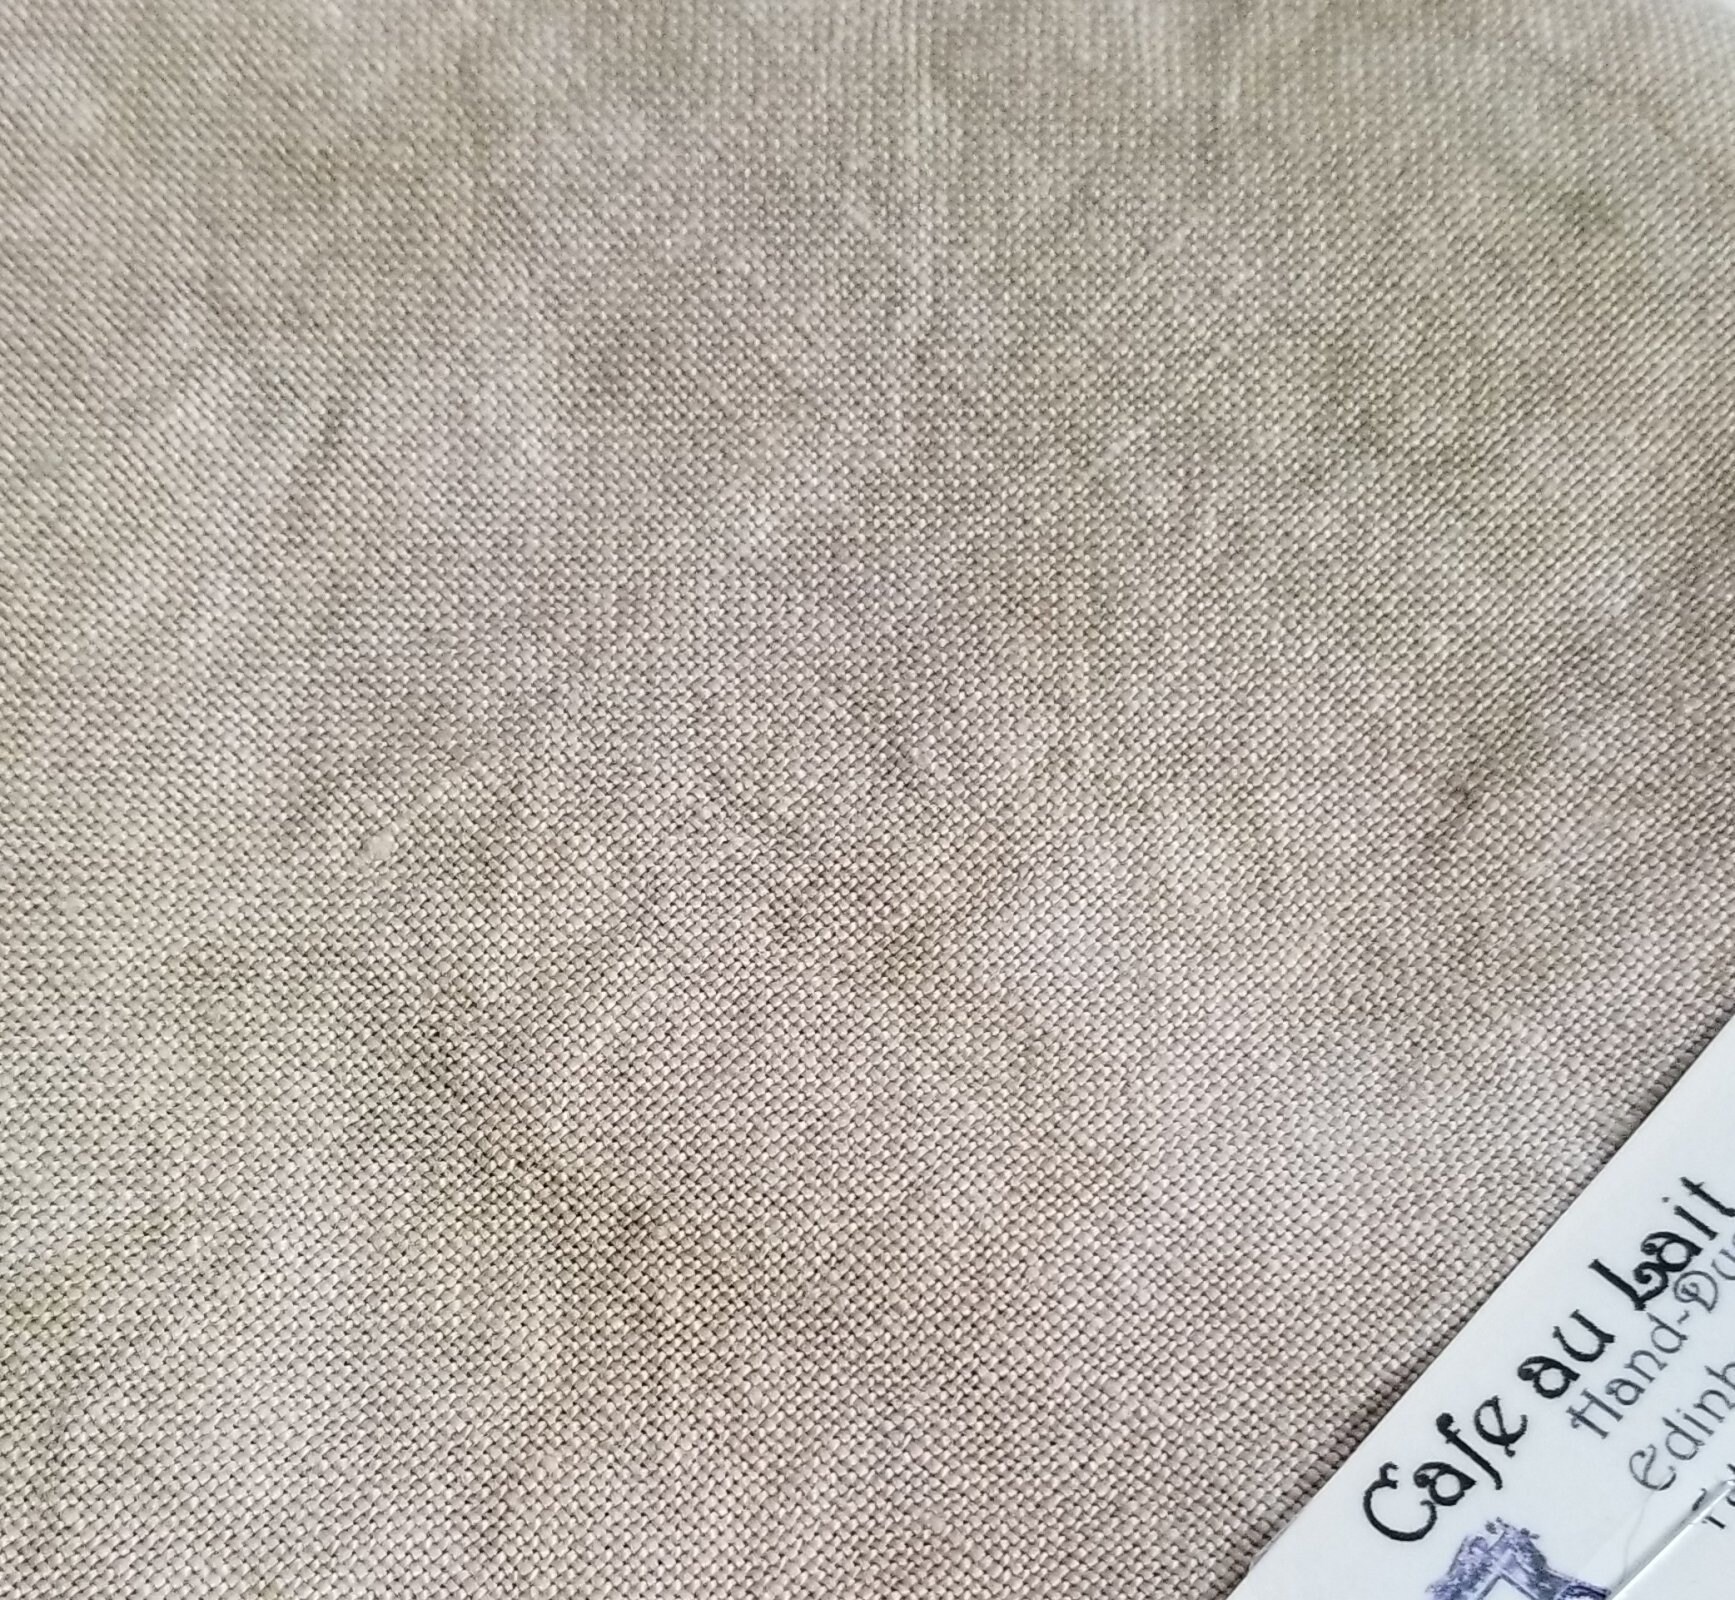 Handi Stitch Bobine de Raphia Naturel (Paquet de 6) - 50 g de